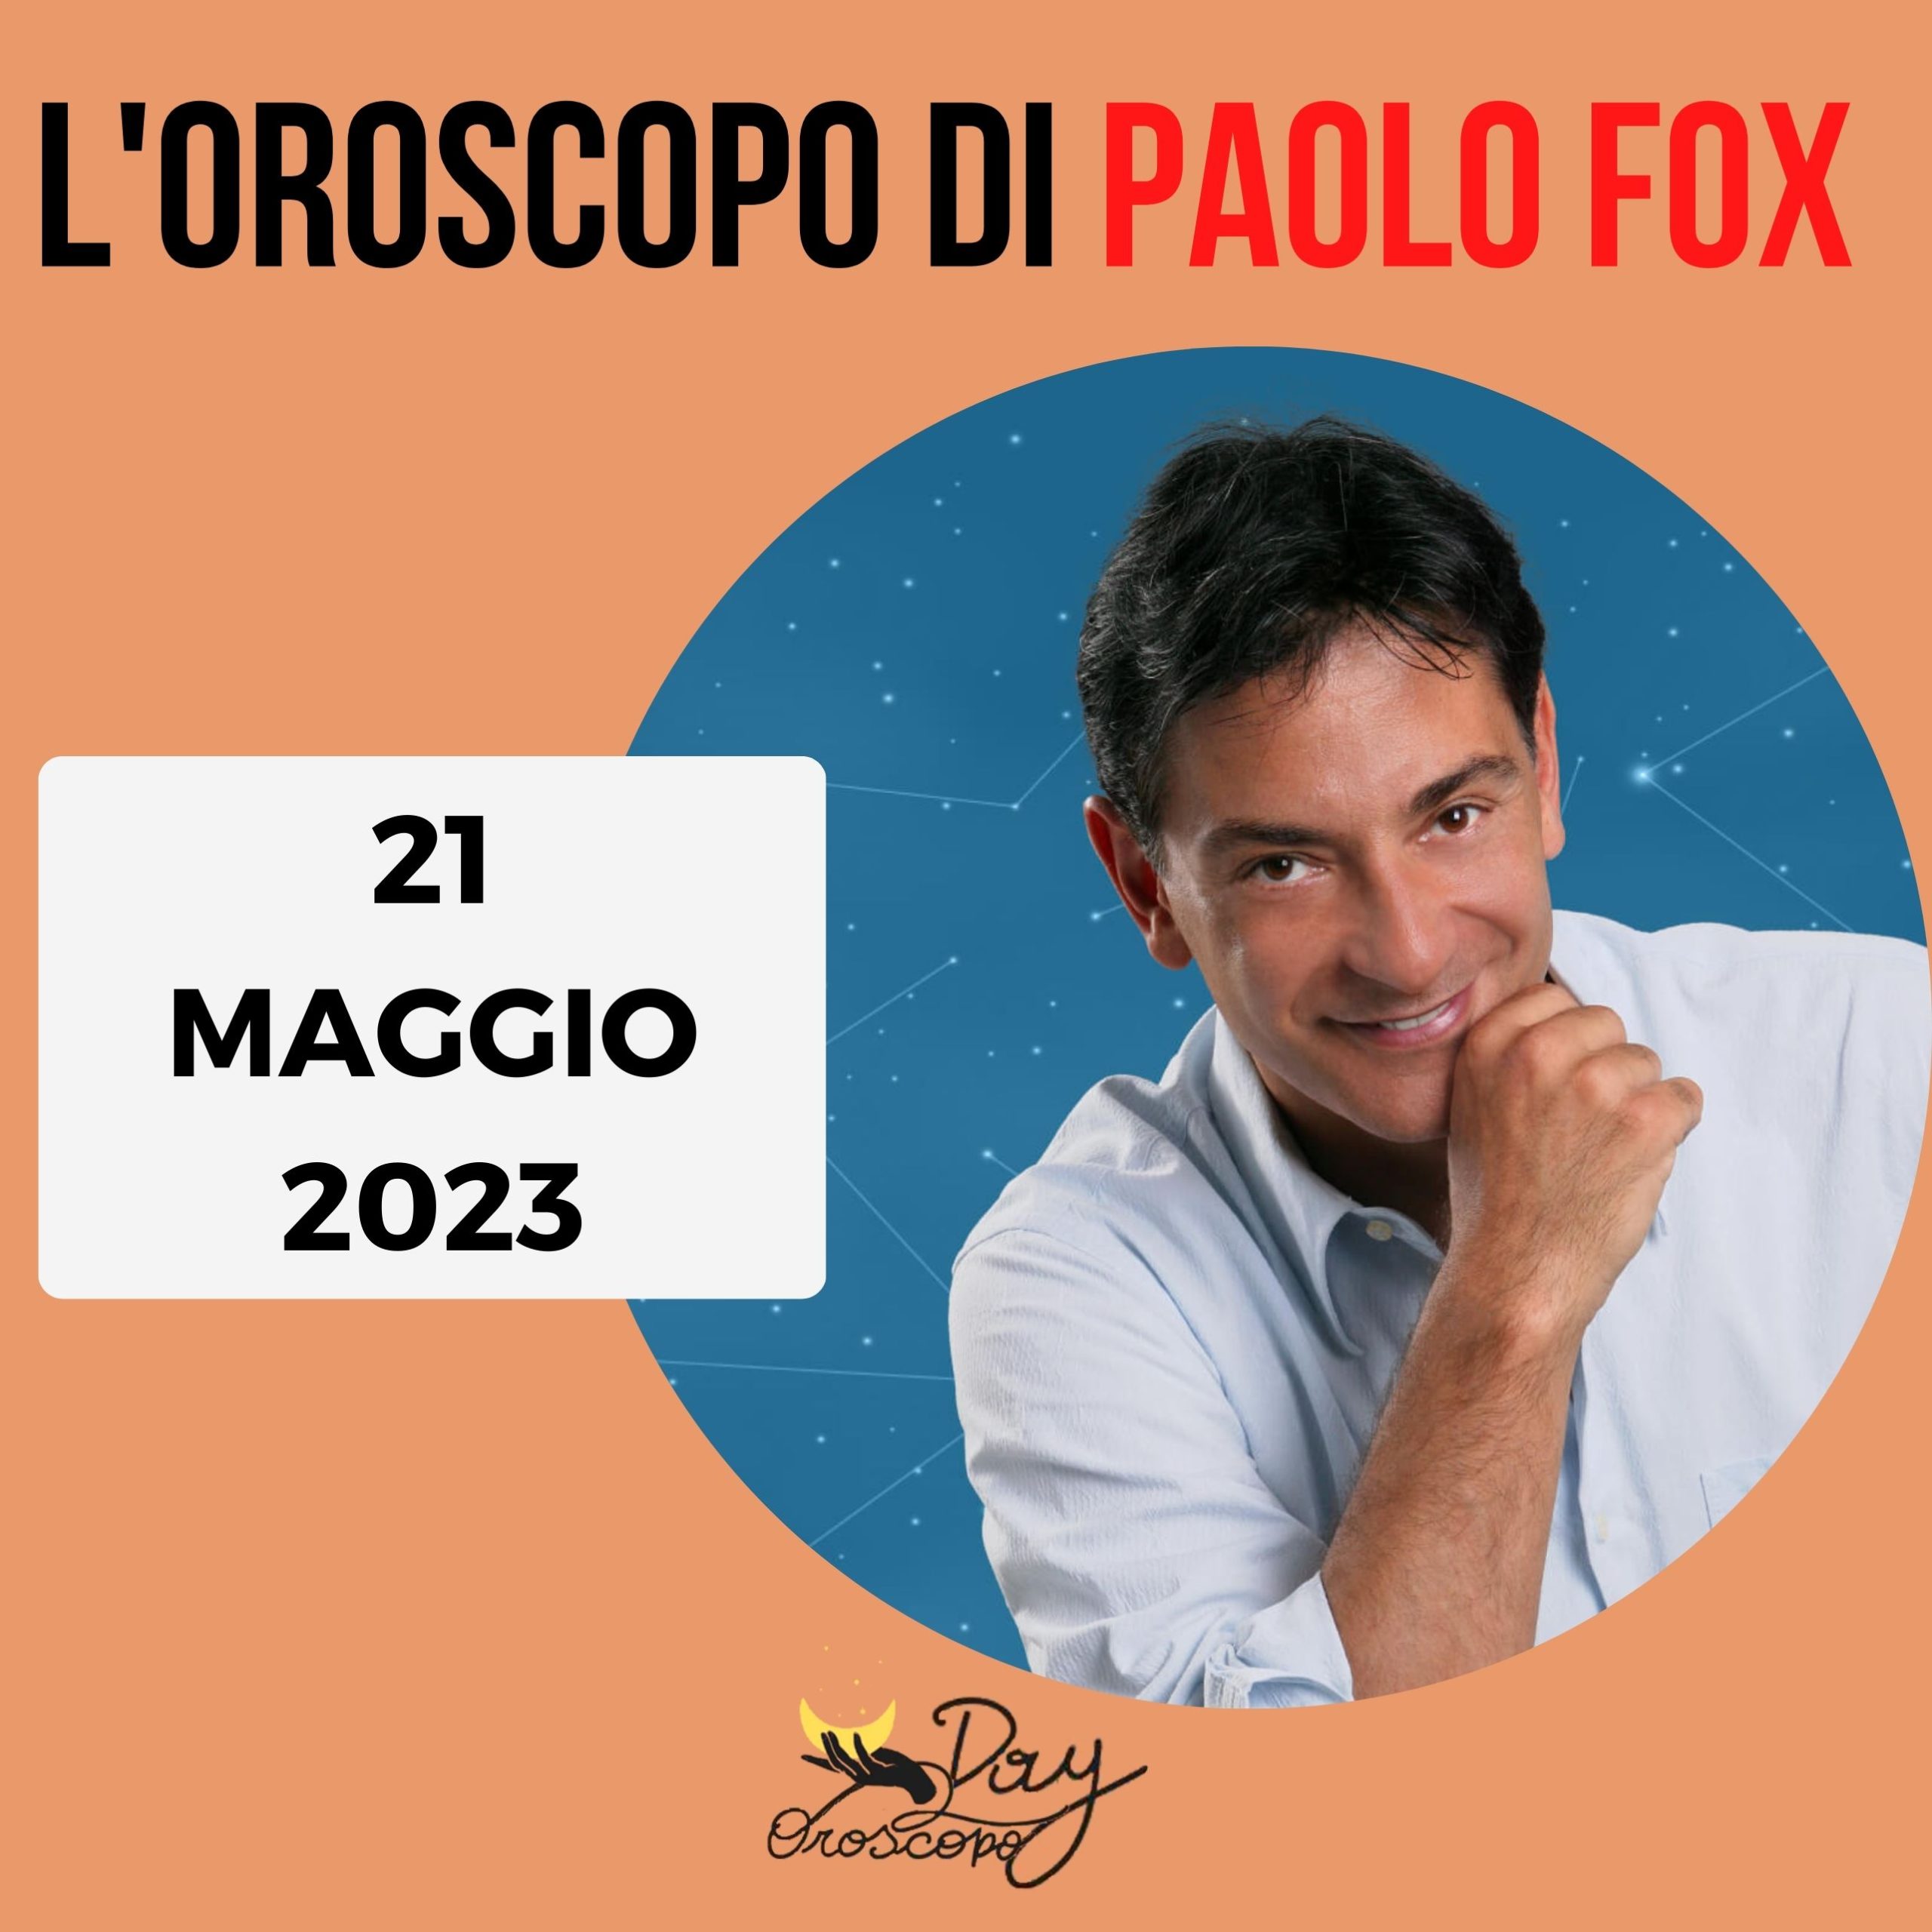 Oroscopo oggi domani Paolo Fox 21 maggio 2023